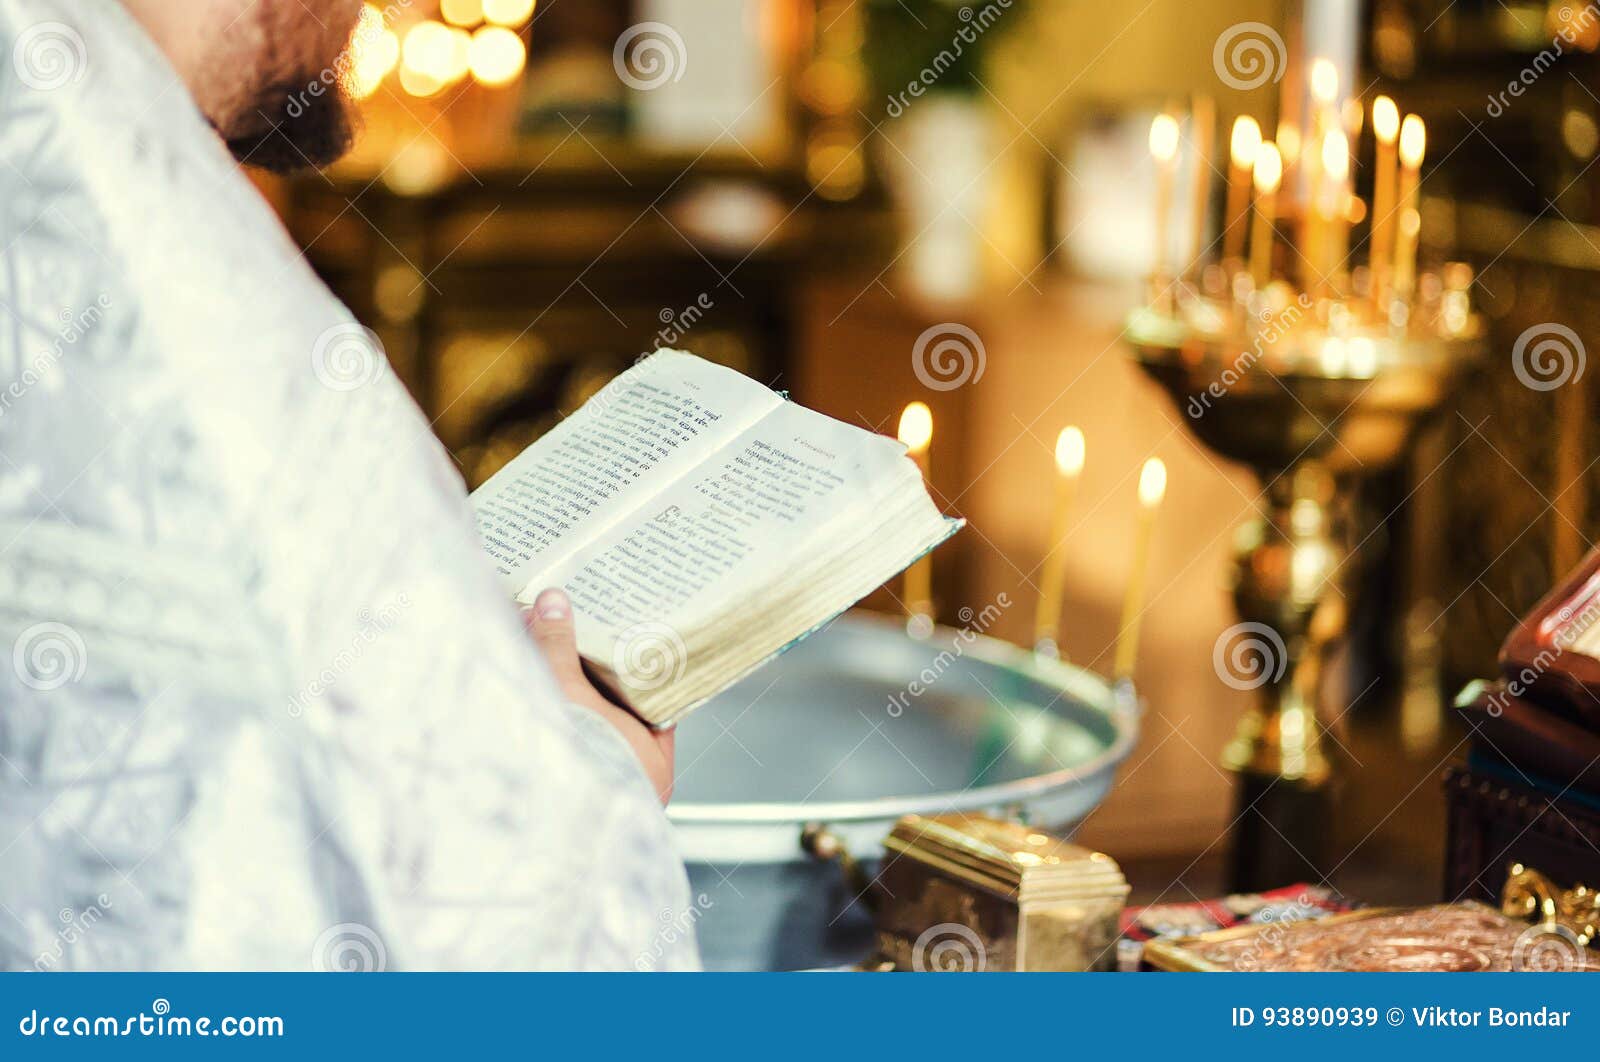 手里拿着圣经的男人 信仰、精神和宗教概念 库存图片. 图片 包括有 基督徒, 基督, 男人, 晒裂, 书目 - 175855671